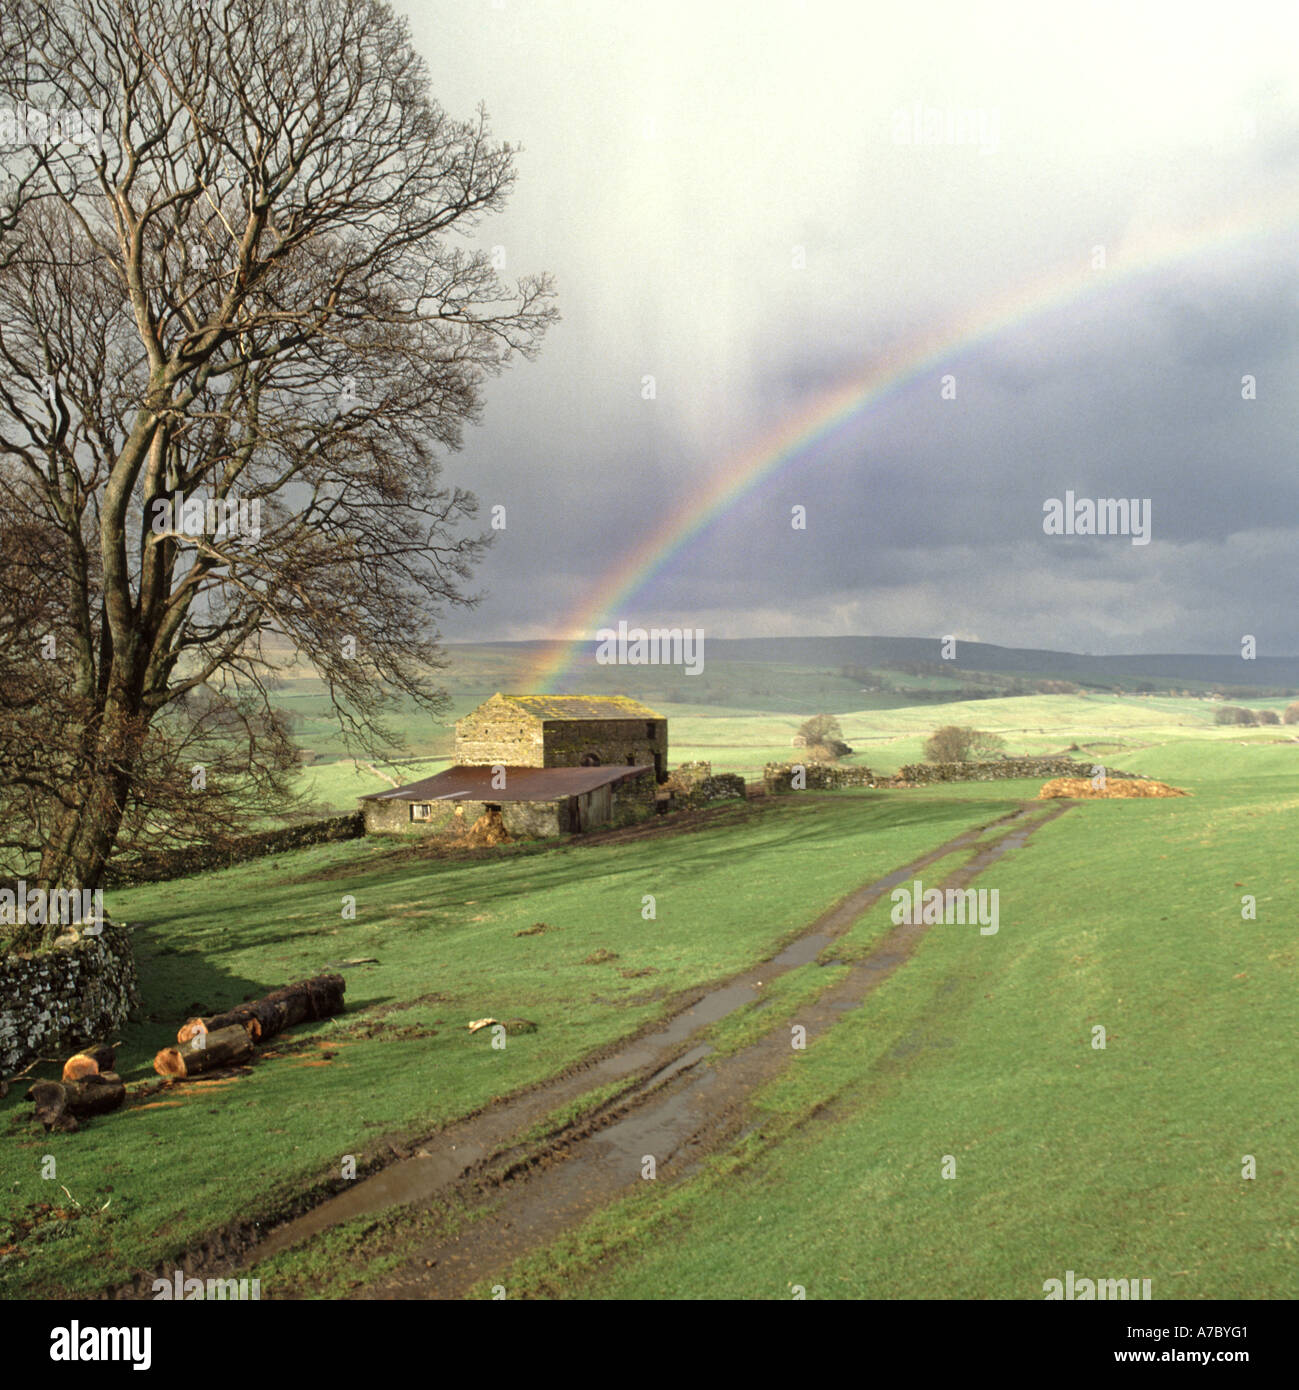 Hawes Stadtrand in Norden Yorkshirea winter Regendusche produziert ein Regenbogen über alte Scheune in Ackerland in der Landschaft Landschaft mit winter baum UK Stockfoto